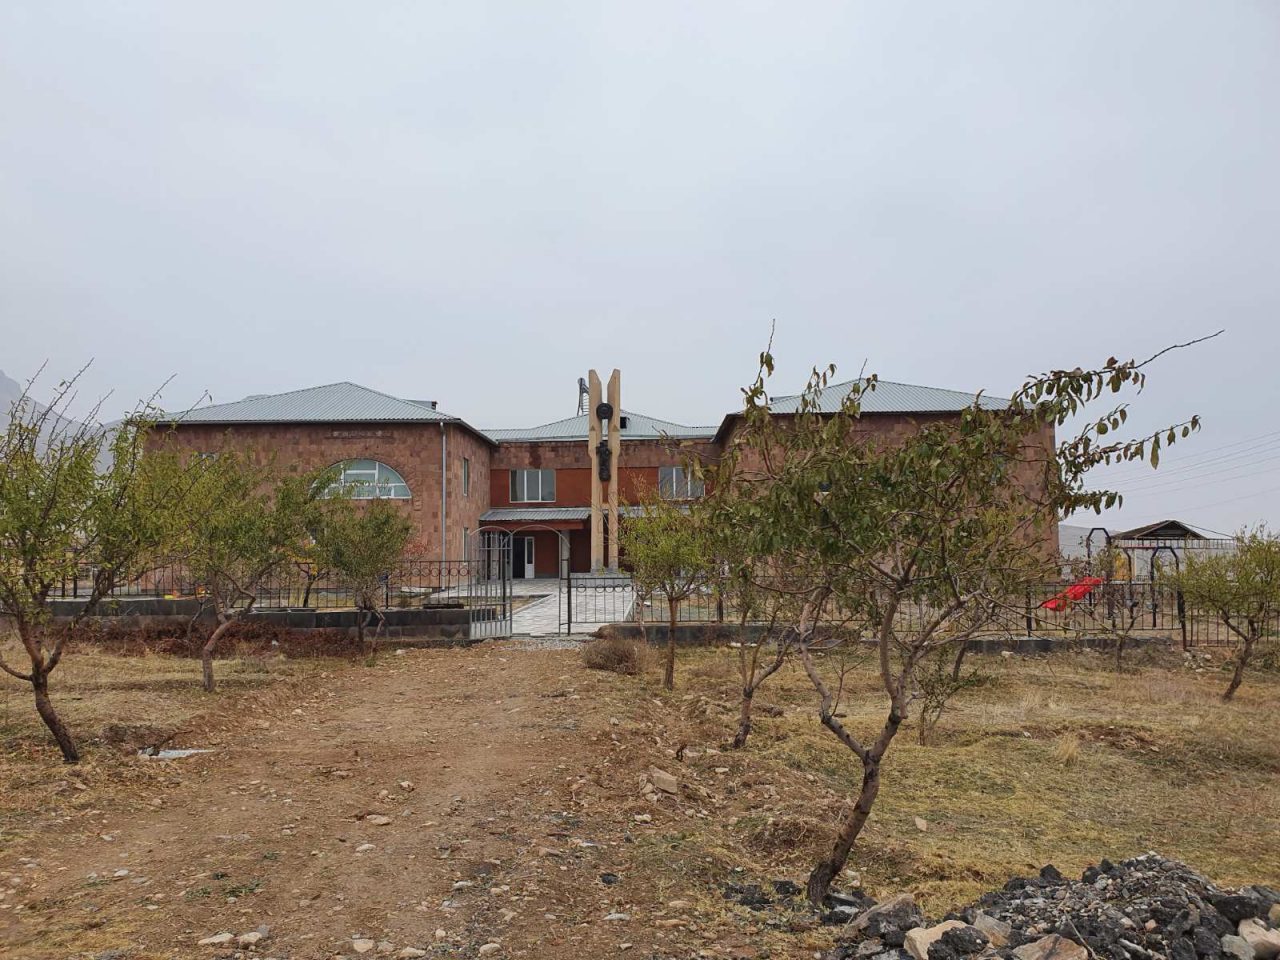 Վիվա-ՄՏՍ. Արարատի մարզի 2 գյուղում ենթակառուցվածքների զարգացման ծրագիր է իրականացվել